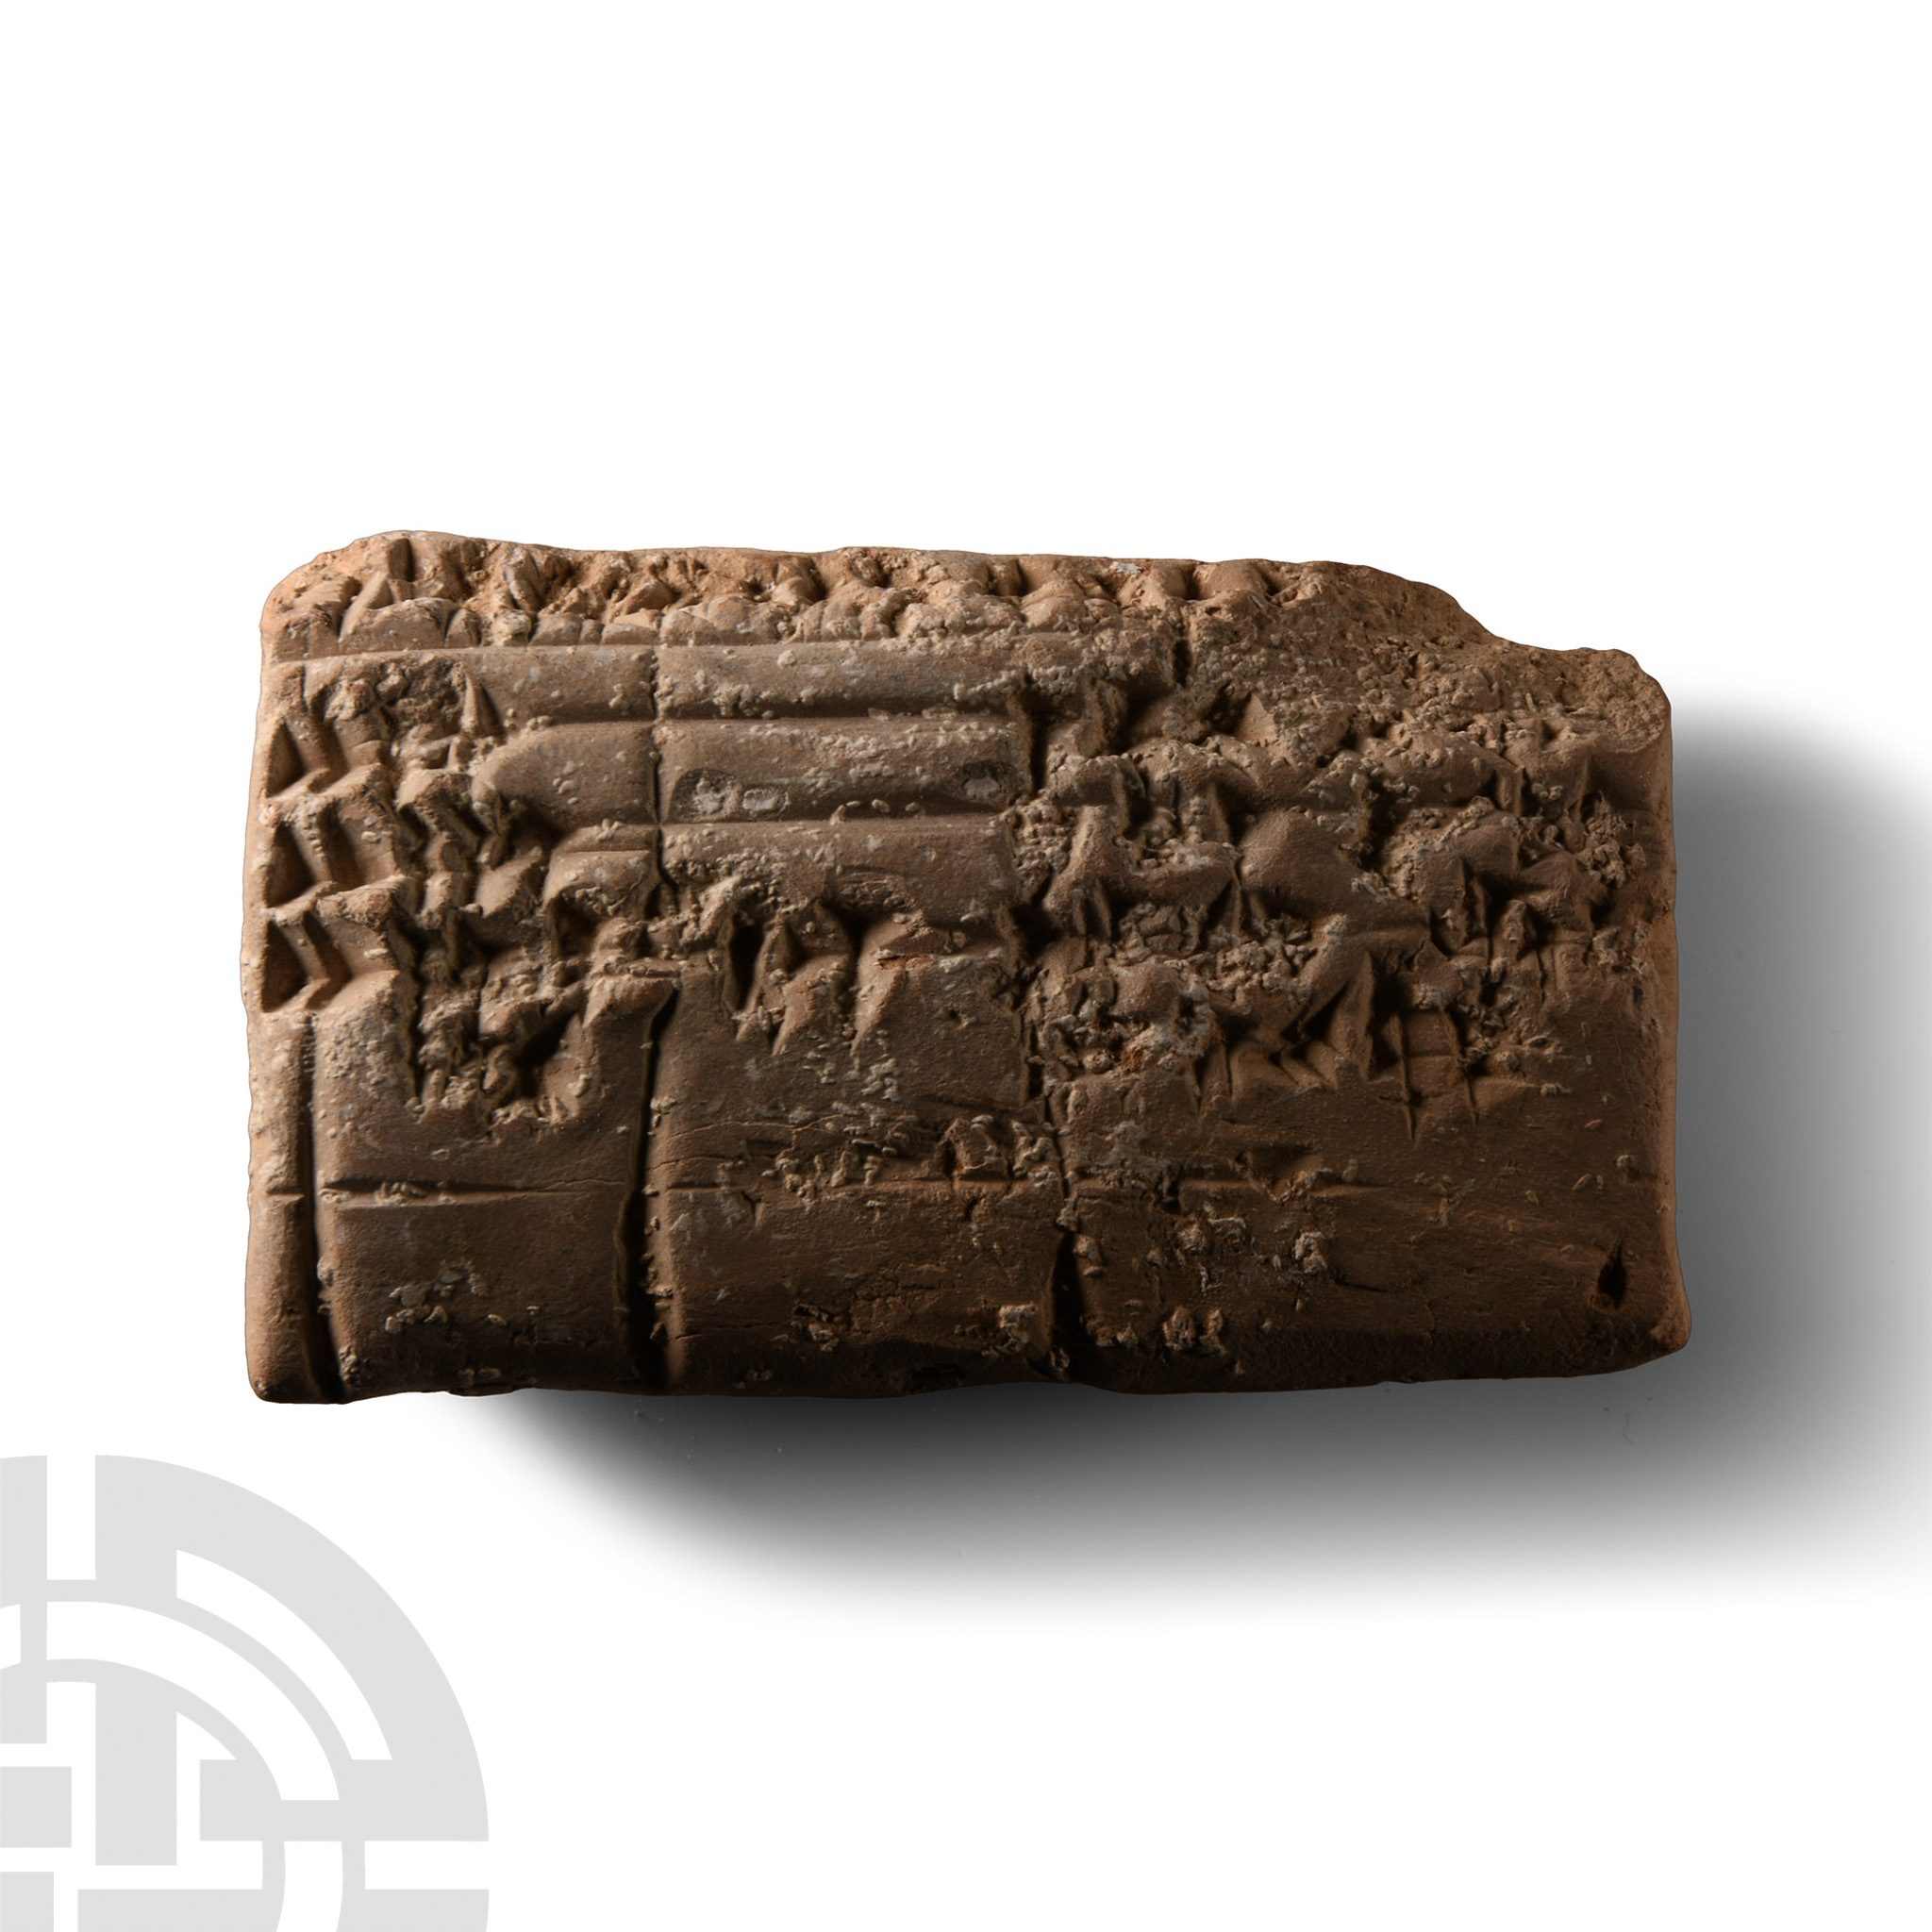 Kassite Cuneiform Tablet